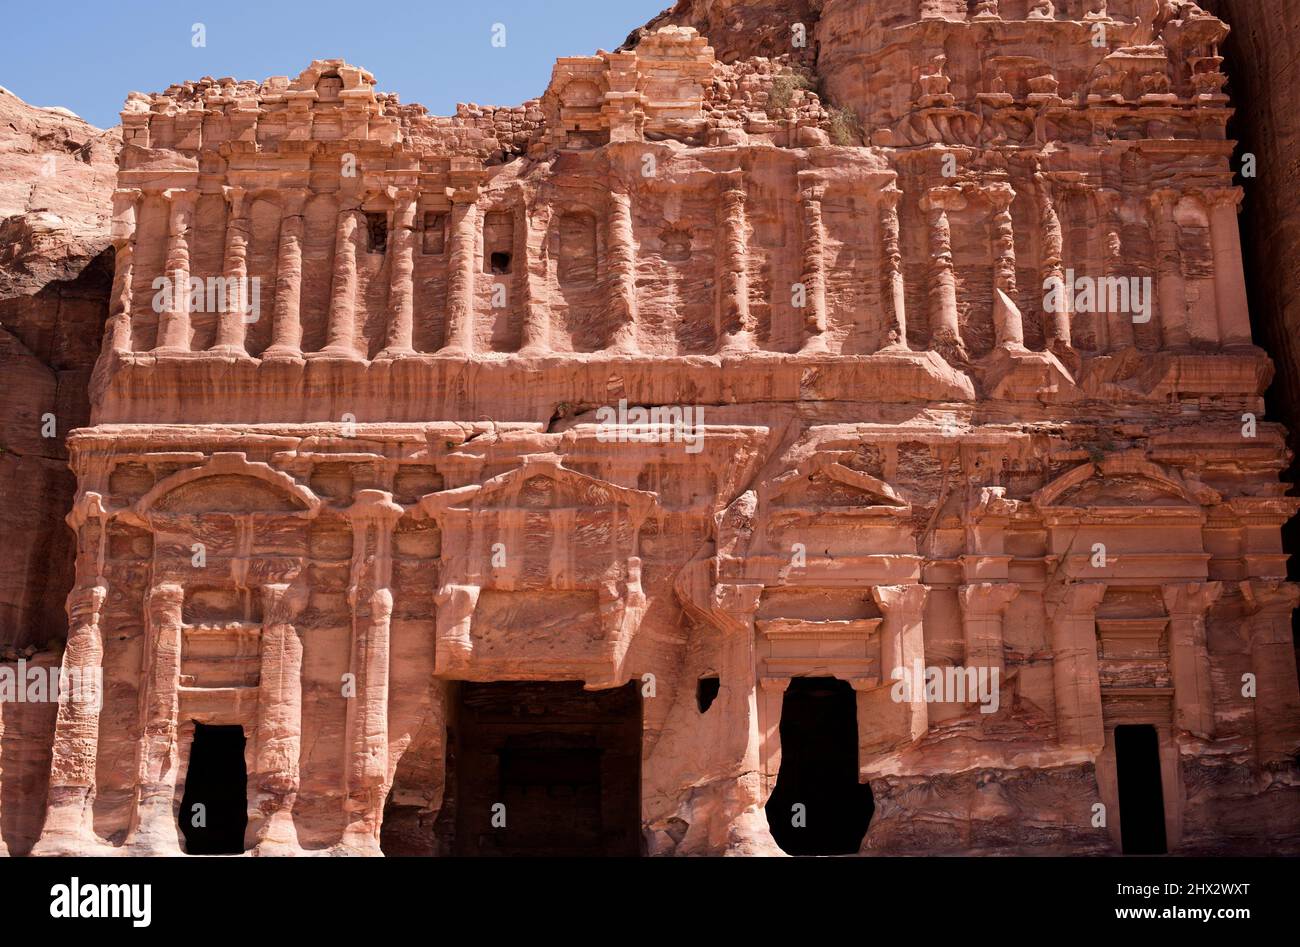 Petra, the Palace Tomb. Ma'an Governorate, Jordan. Stock Photo